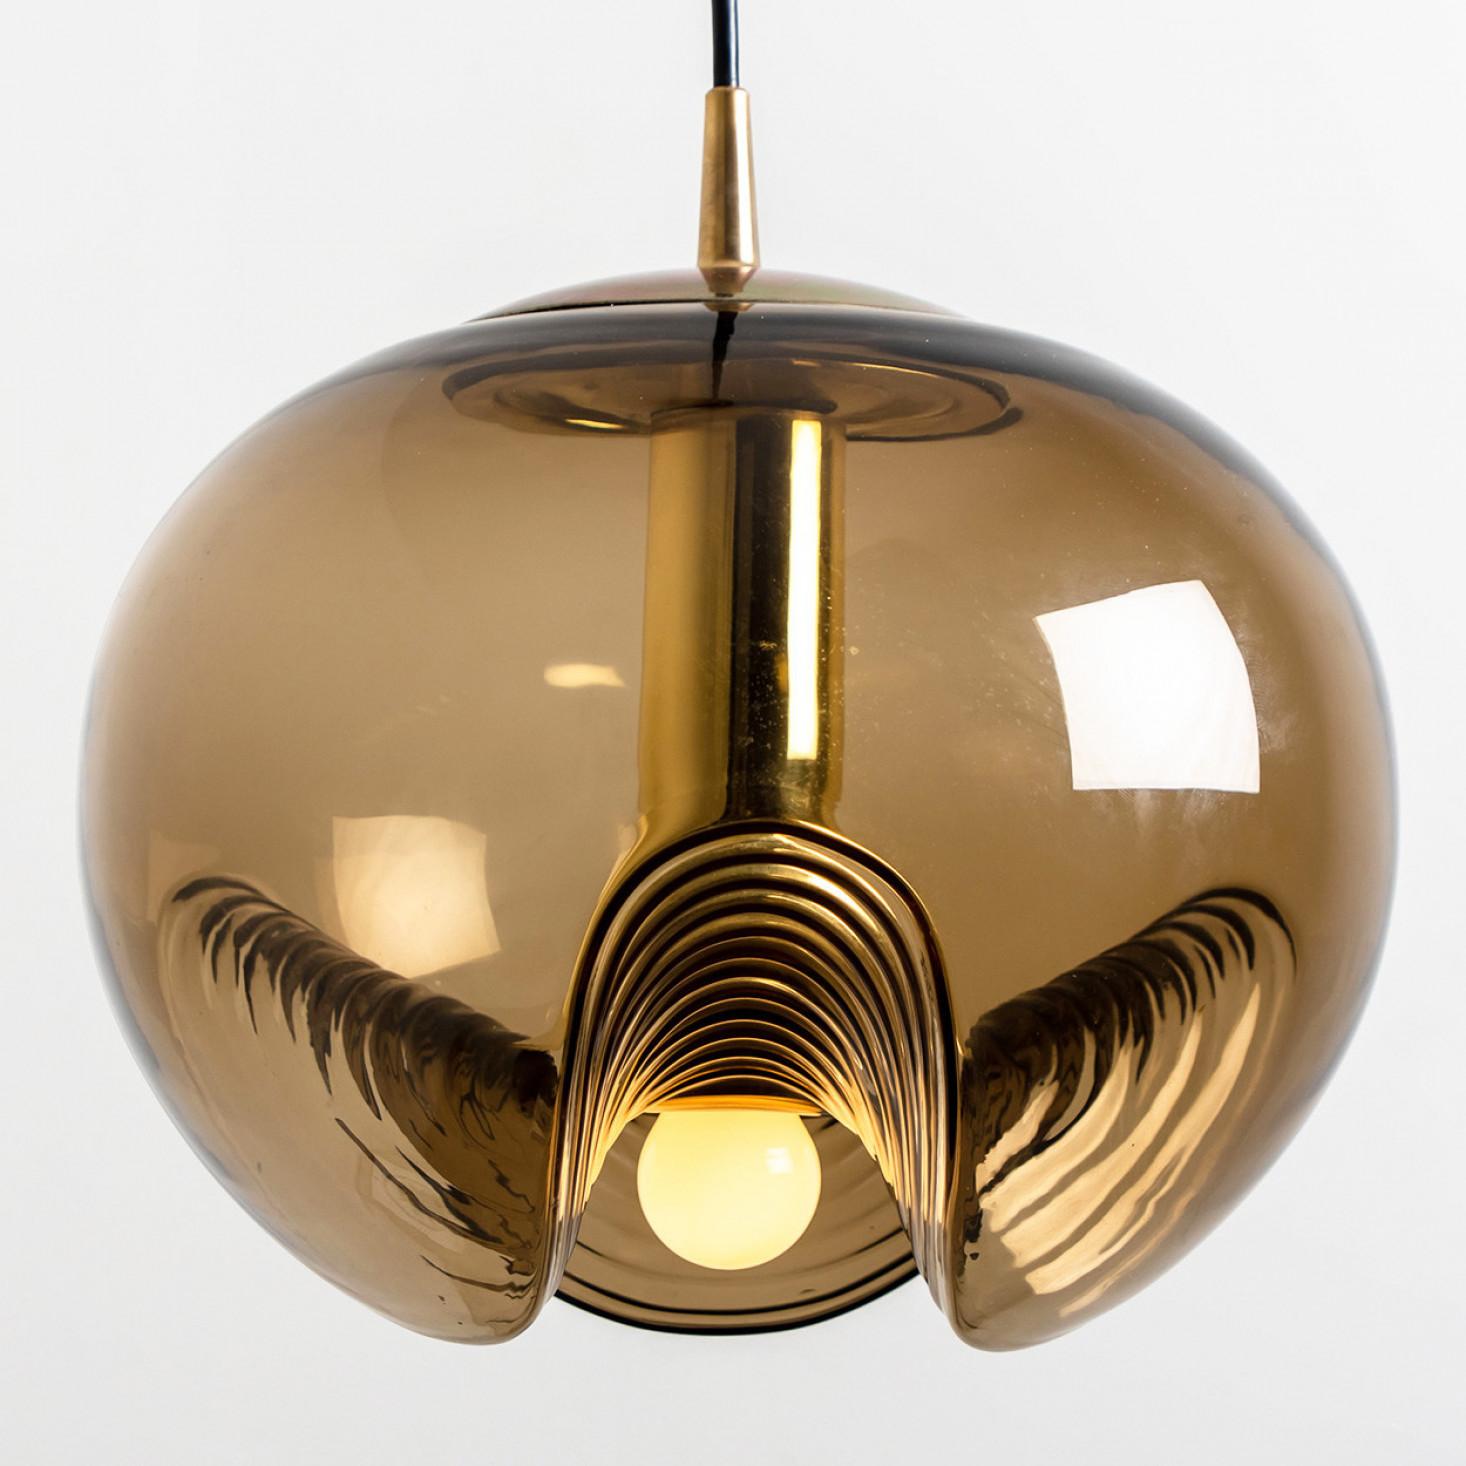 Un ensemble spécial de luminaires ronds en verre fumé biomorphique conçus par Koch & Lowy pour Peill & Putzler, fabriqués en Allemagne, vers les années 1970. Ces luminaires vintage de Peill & Putzler deviennent rapidement des classiques du